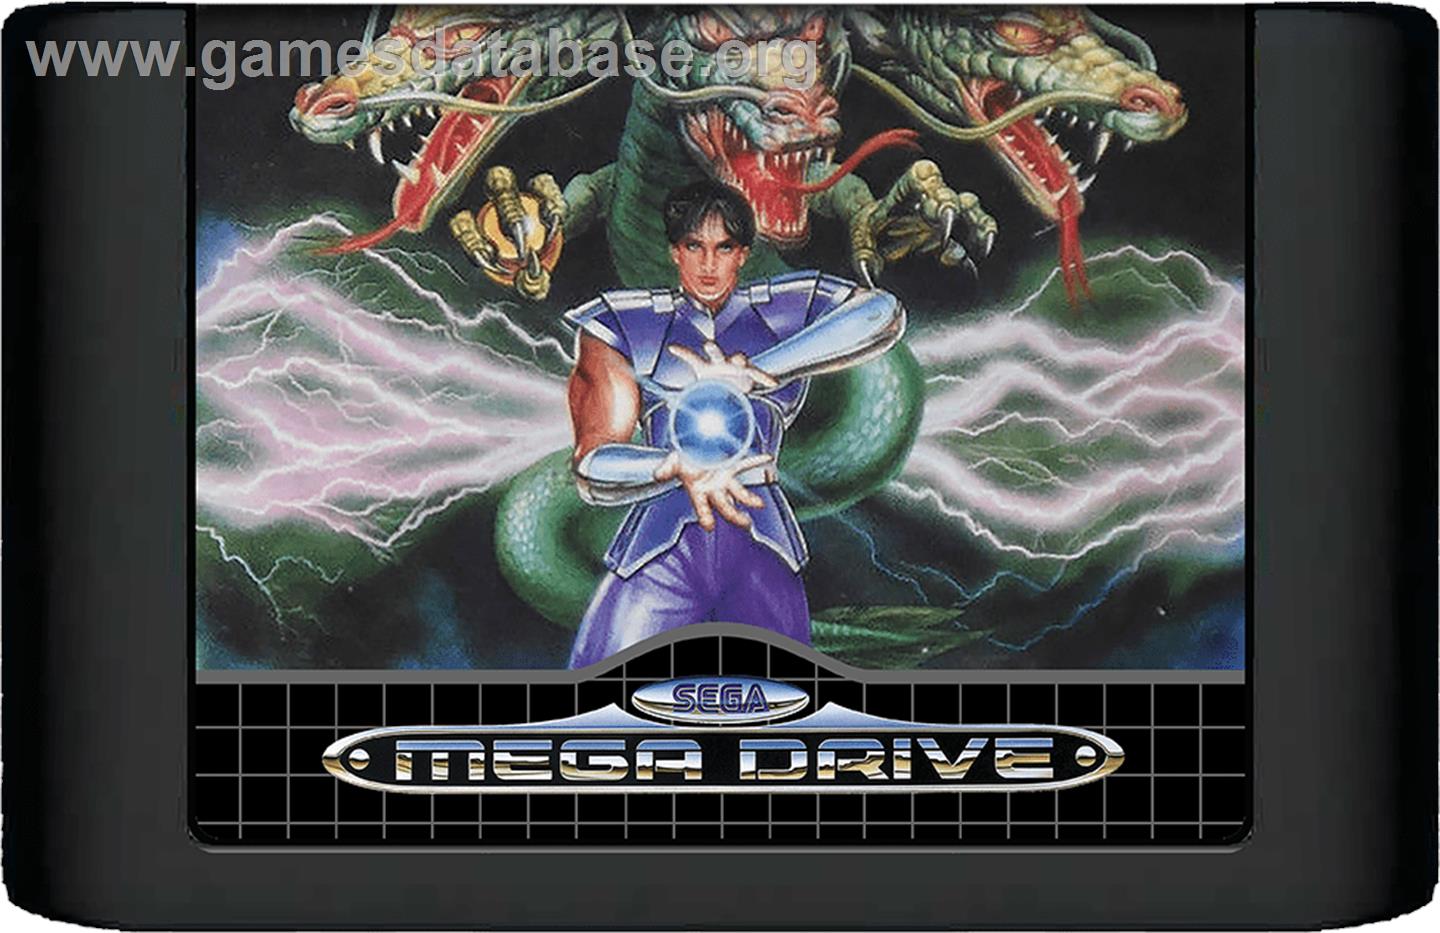 Mystic Defender - Sega Genesis - Artwork - Cartridge